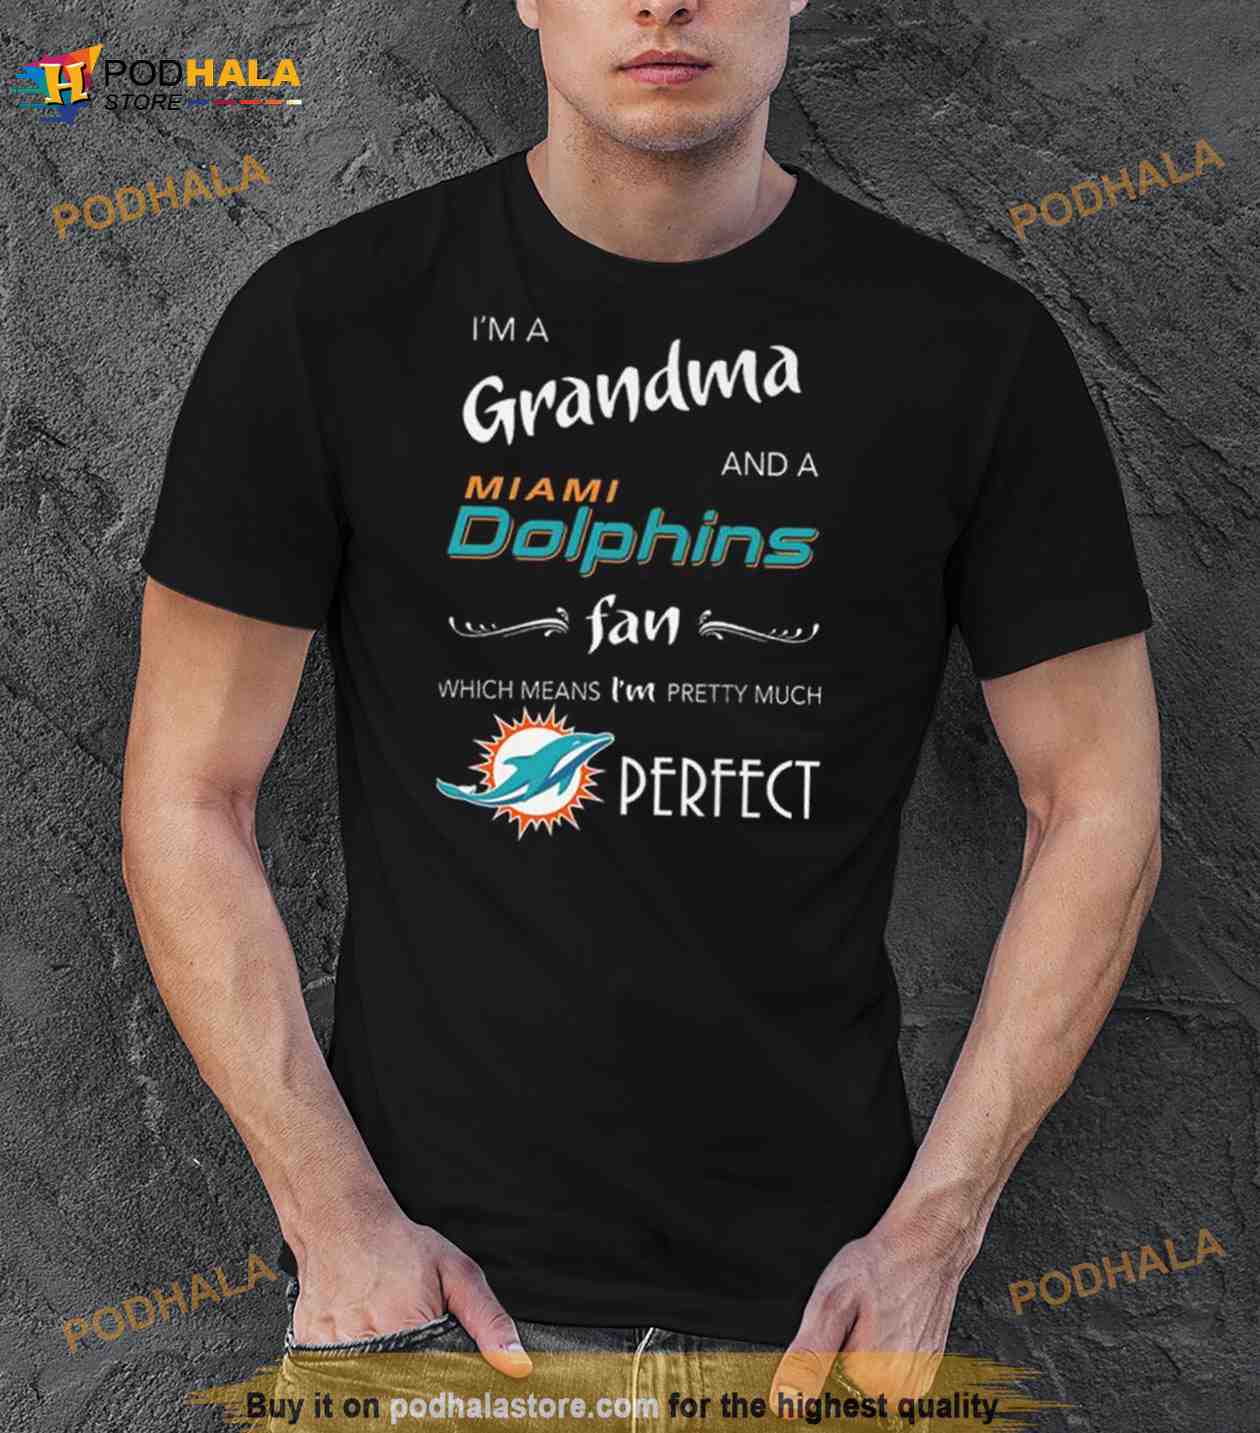 dolphins fan store